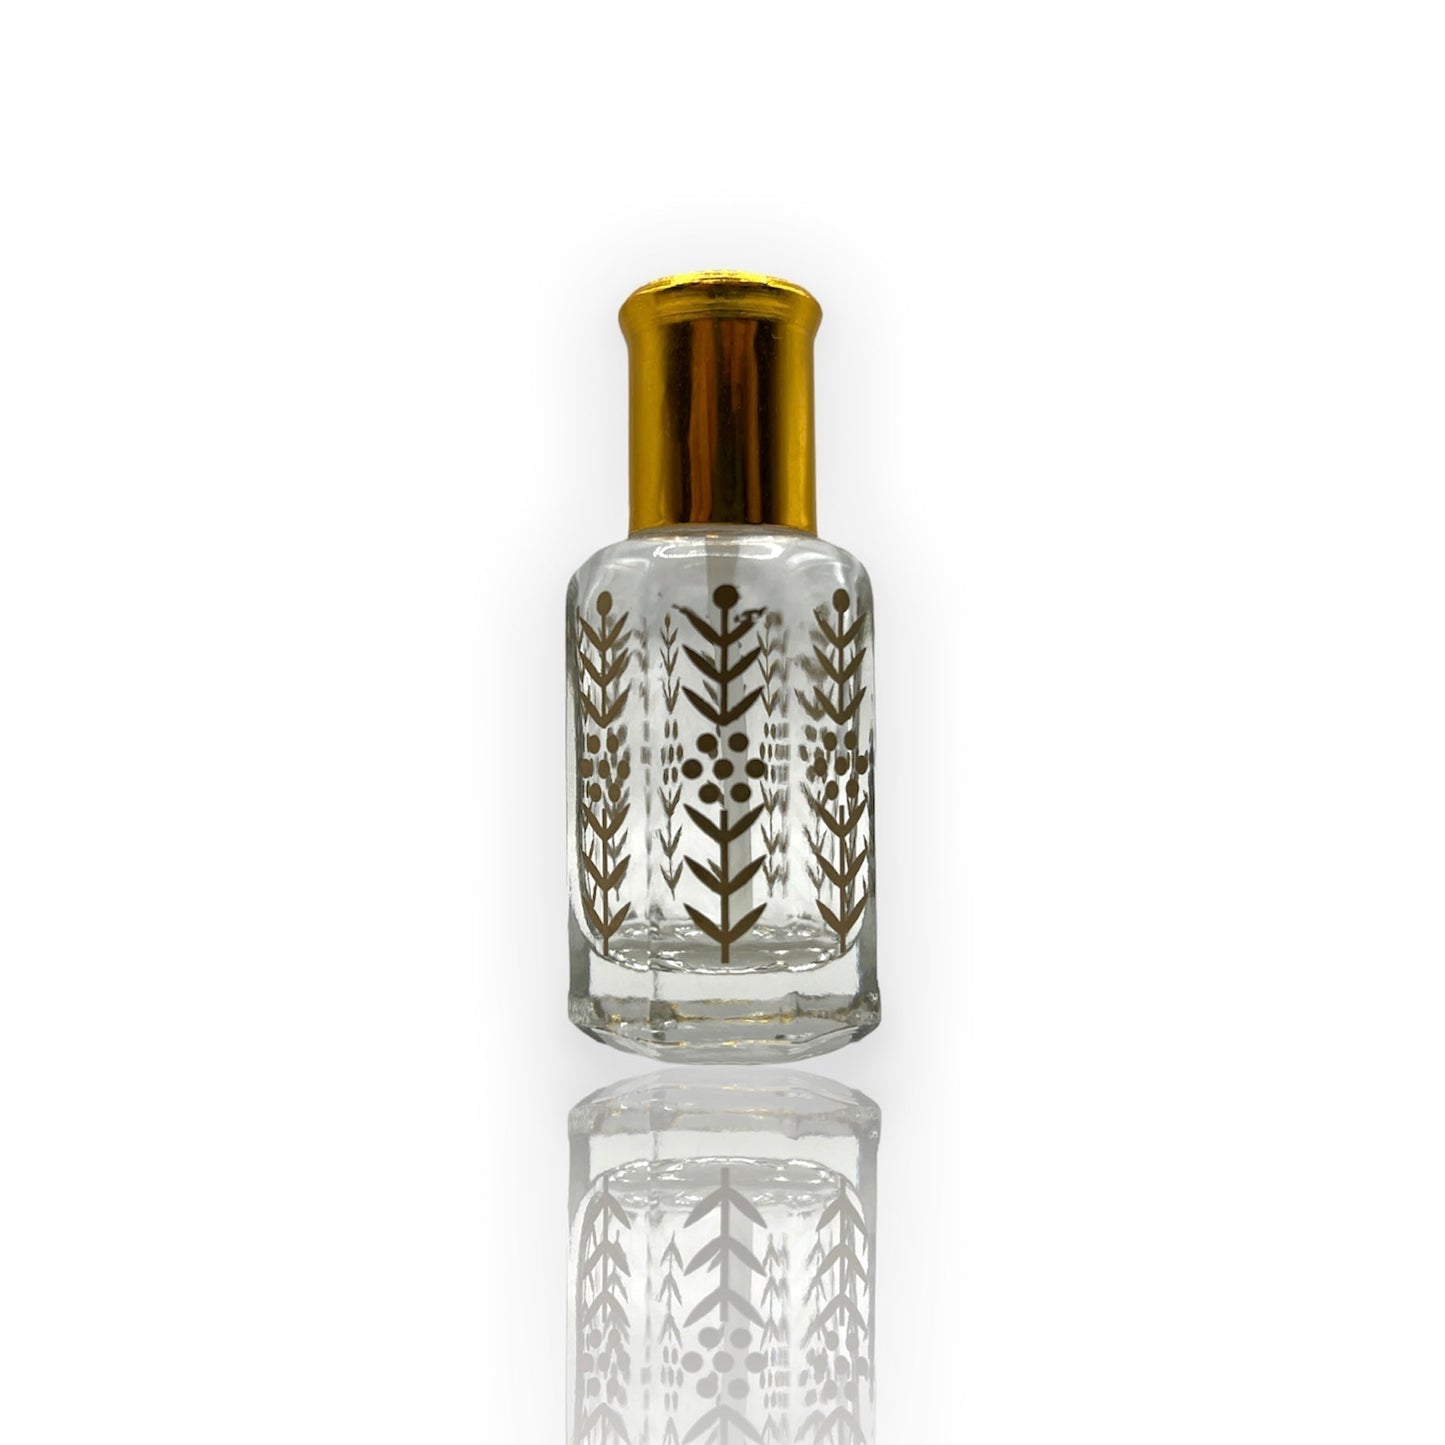 M-07 Öl Parfüm *Inspiriert Von Dior Homme Intense